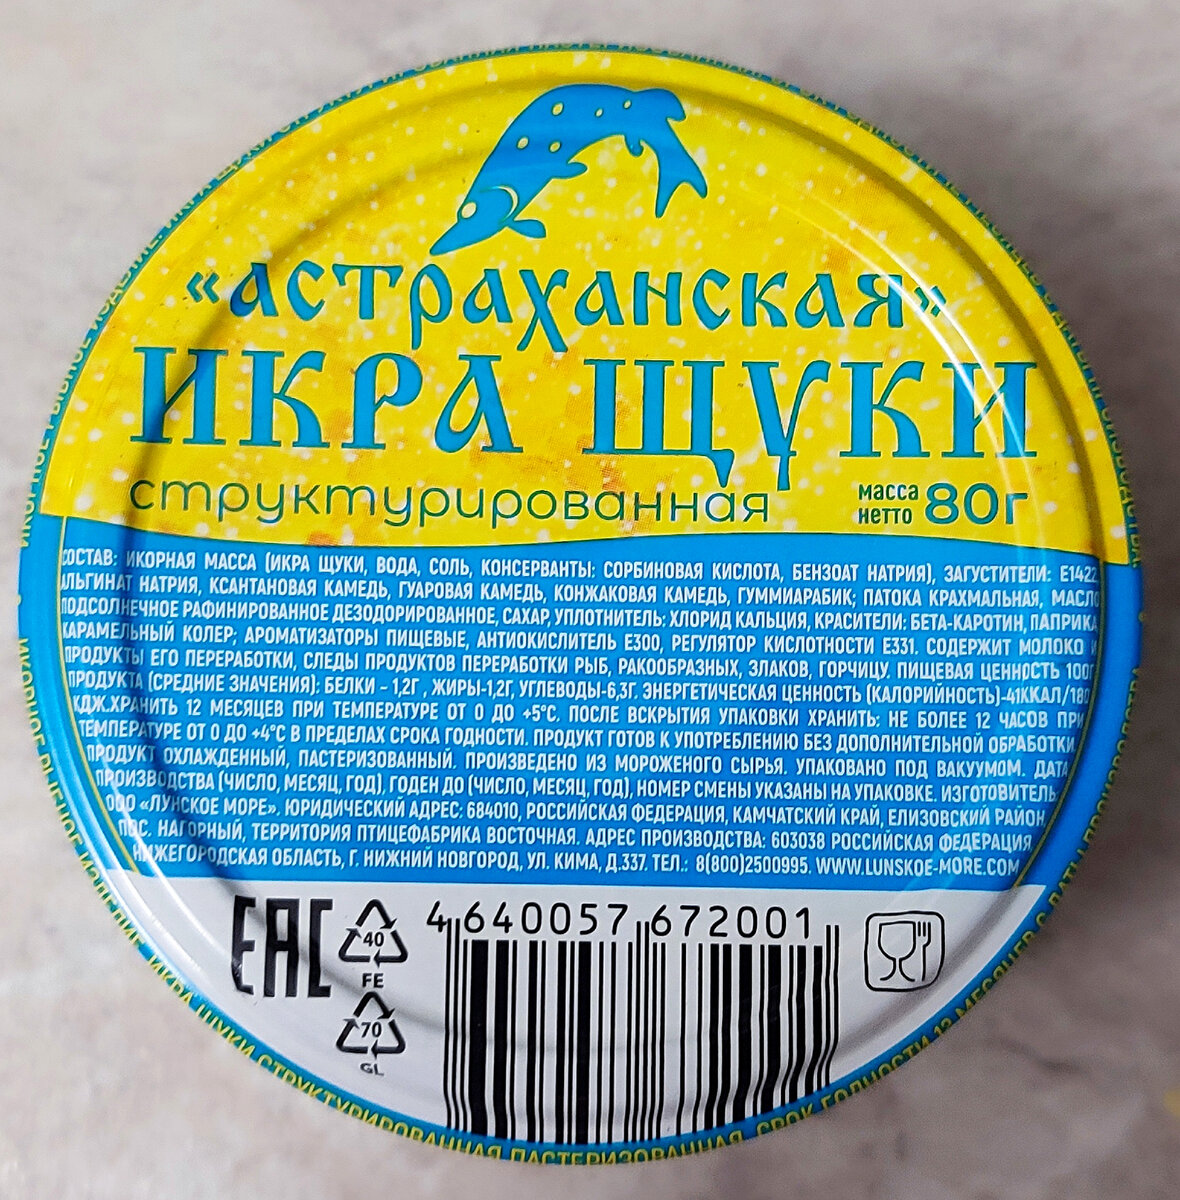 Всем привет!  Купил на пробу "Астраханскую" икру щуки структурированную за 99 рублей.  По цене в 5-7 раз дешевле, чем за настоящую икру.